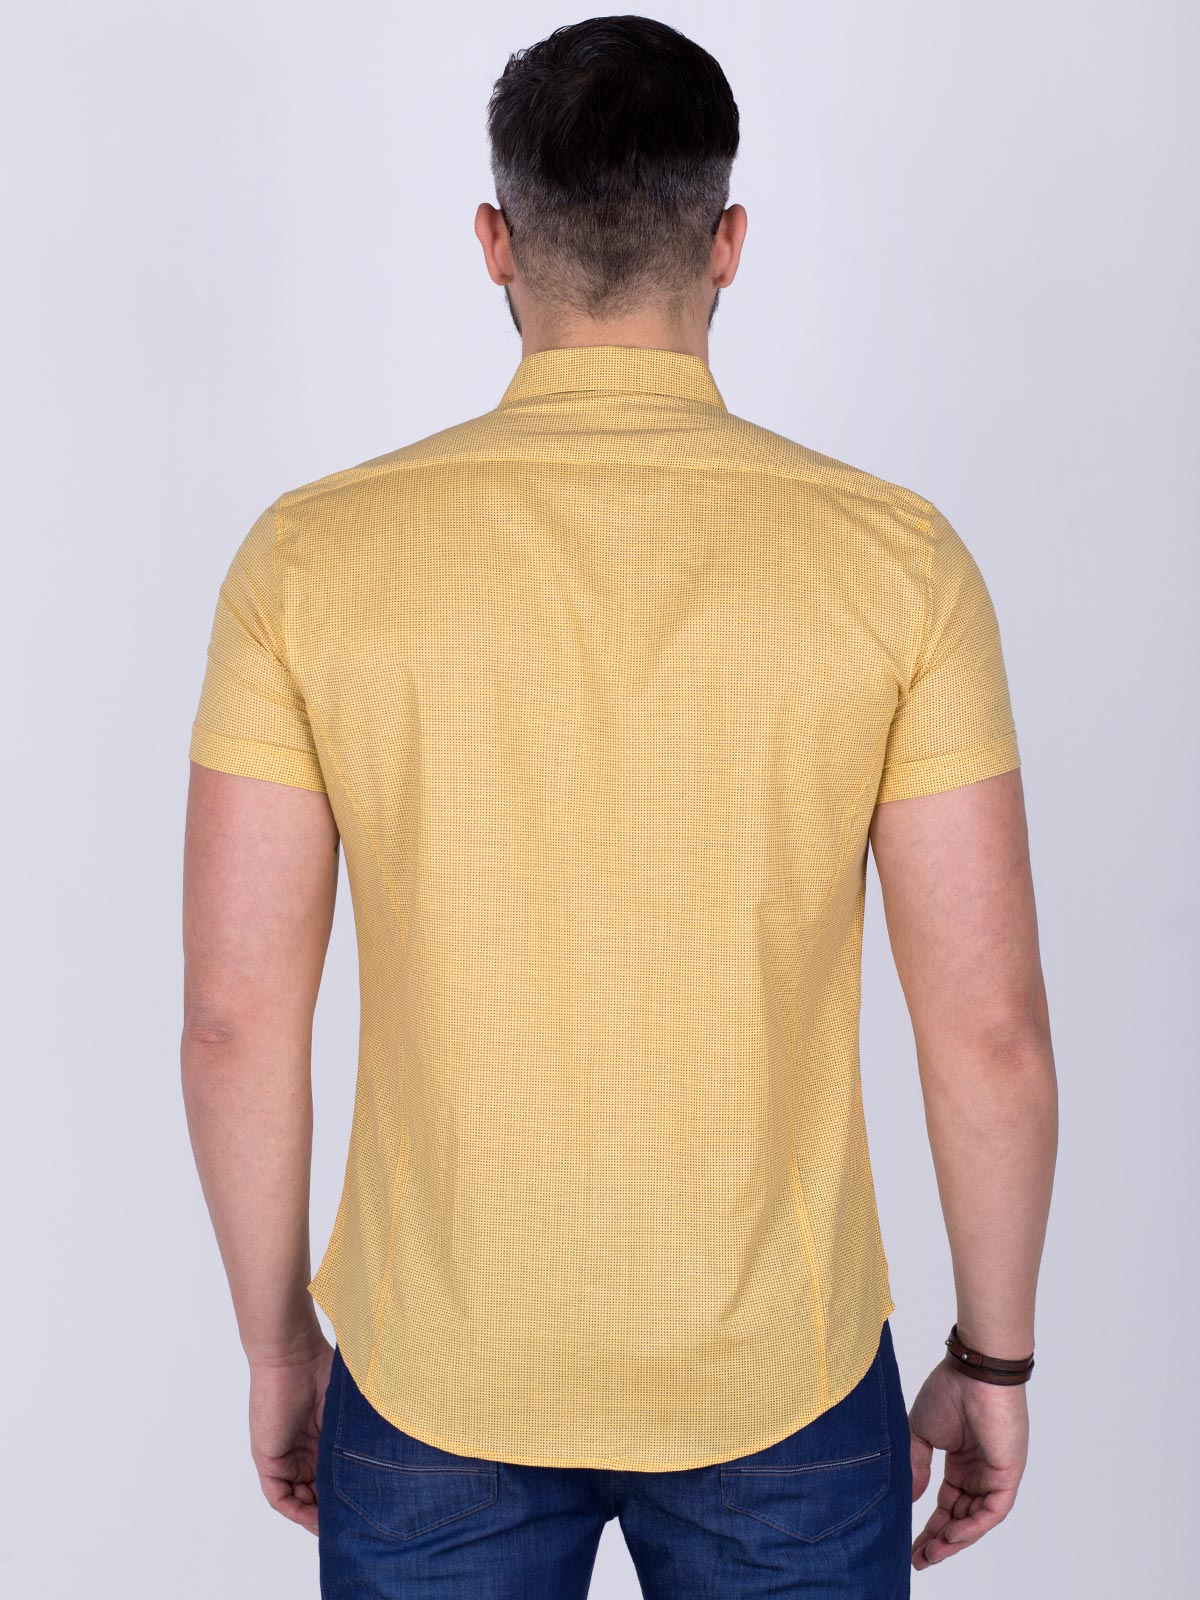 Жълта вталена риза на ситни фигури - 80200 20.00 лв img2